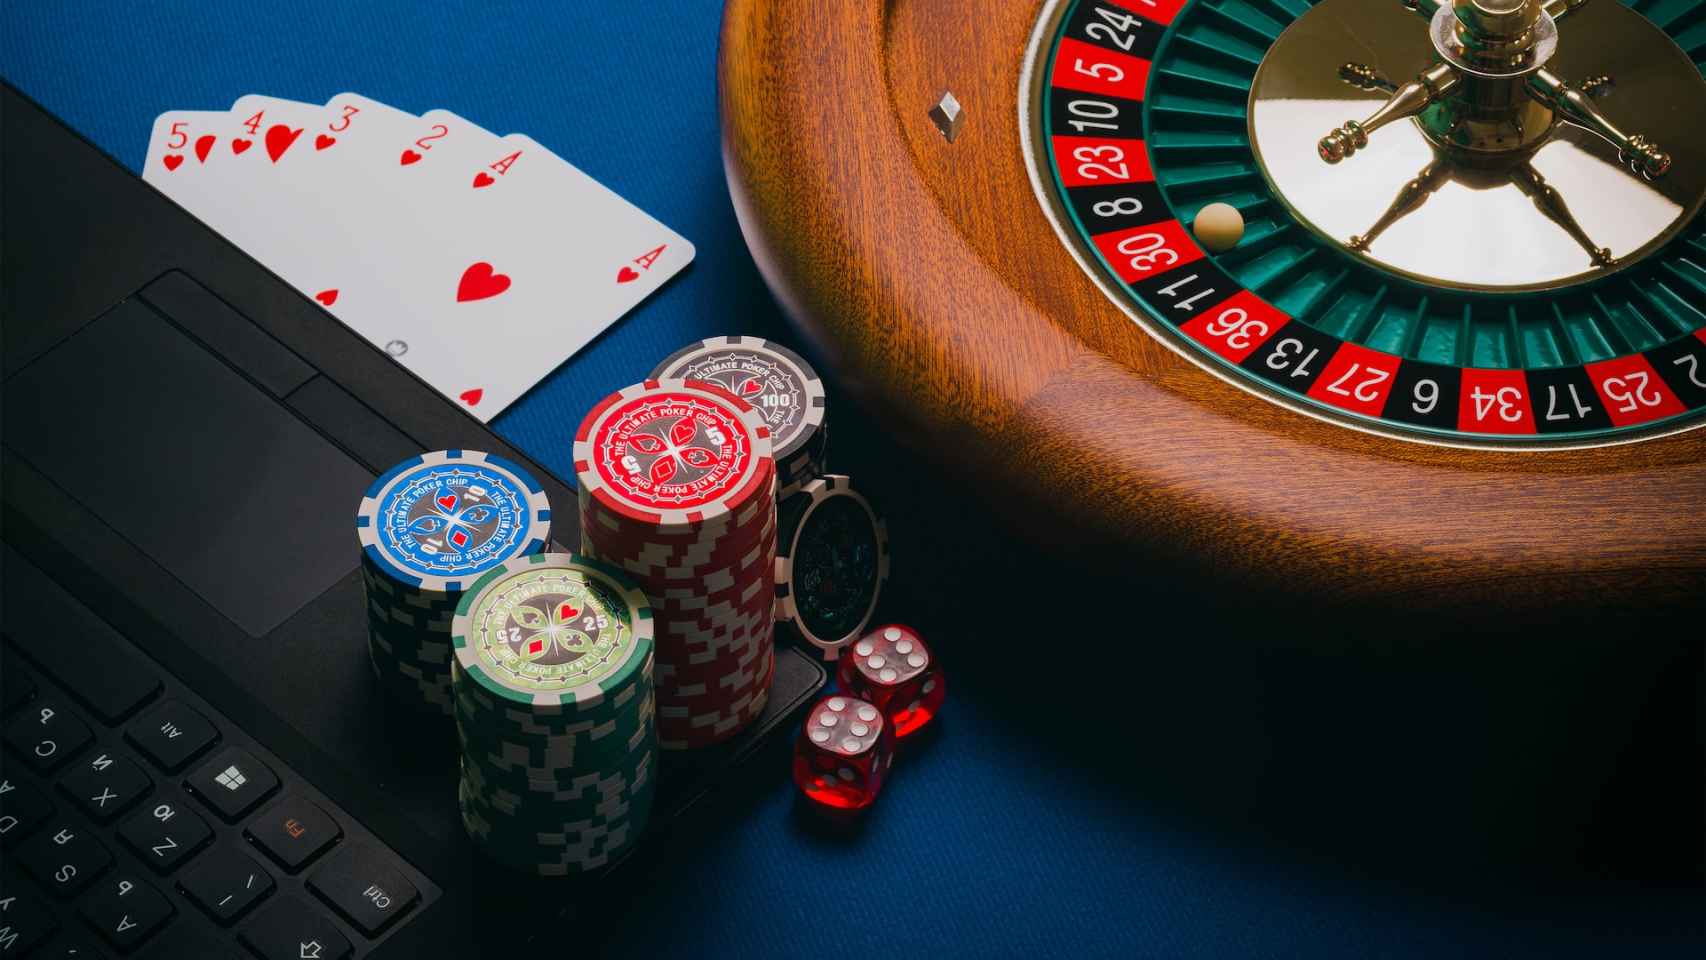 Beneficios financieros para empresarios referidos en juegos de azar